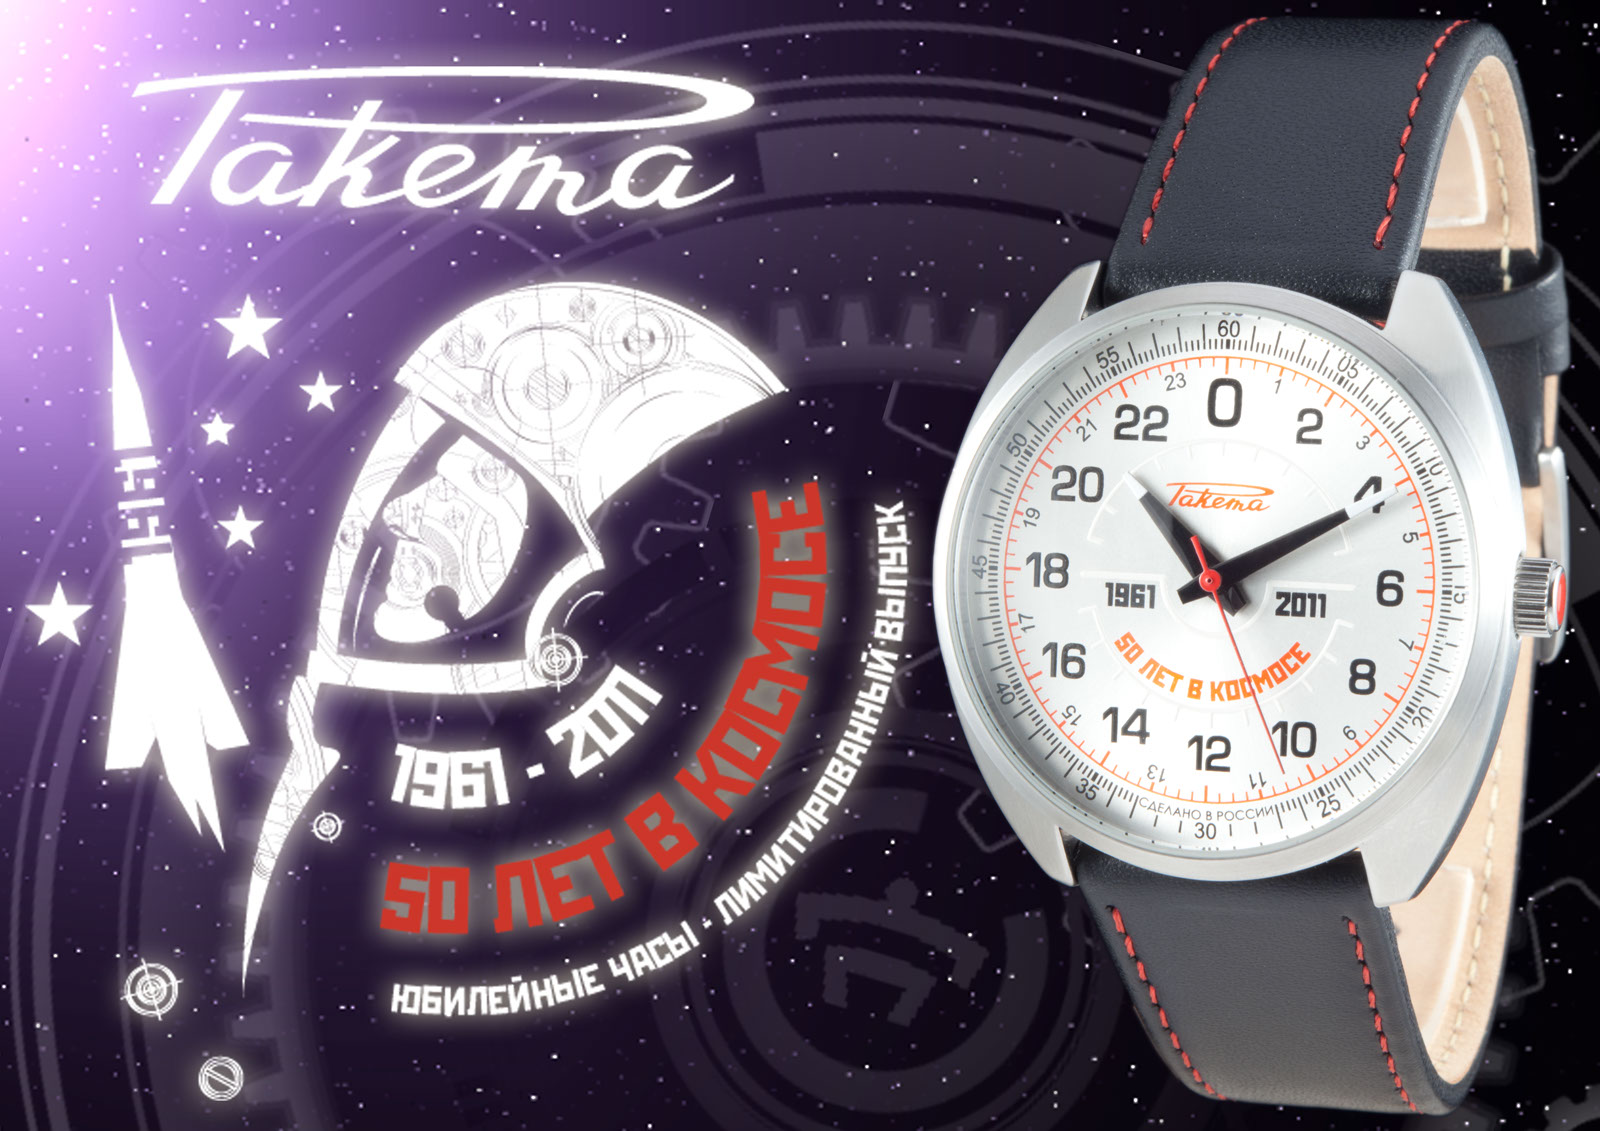 Провел 50 часов. Часы ракета Петродворцовый часовой завод. Часы ракета Спутник 1 2022. Ракета “Спутник-1” 0291 часы. Часы посвященные полету в космос.